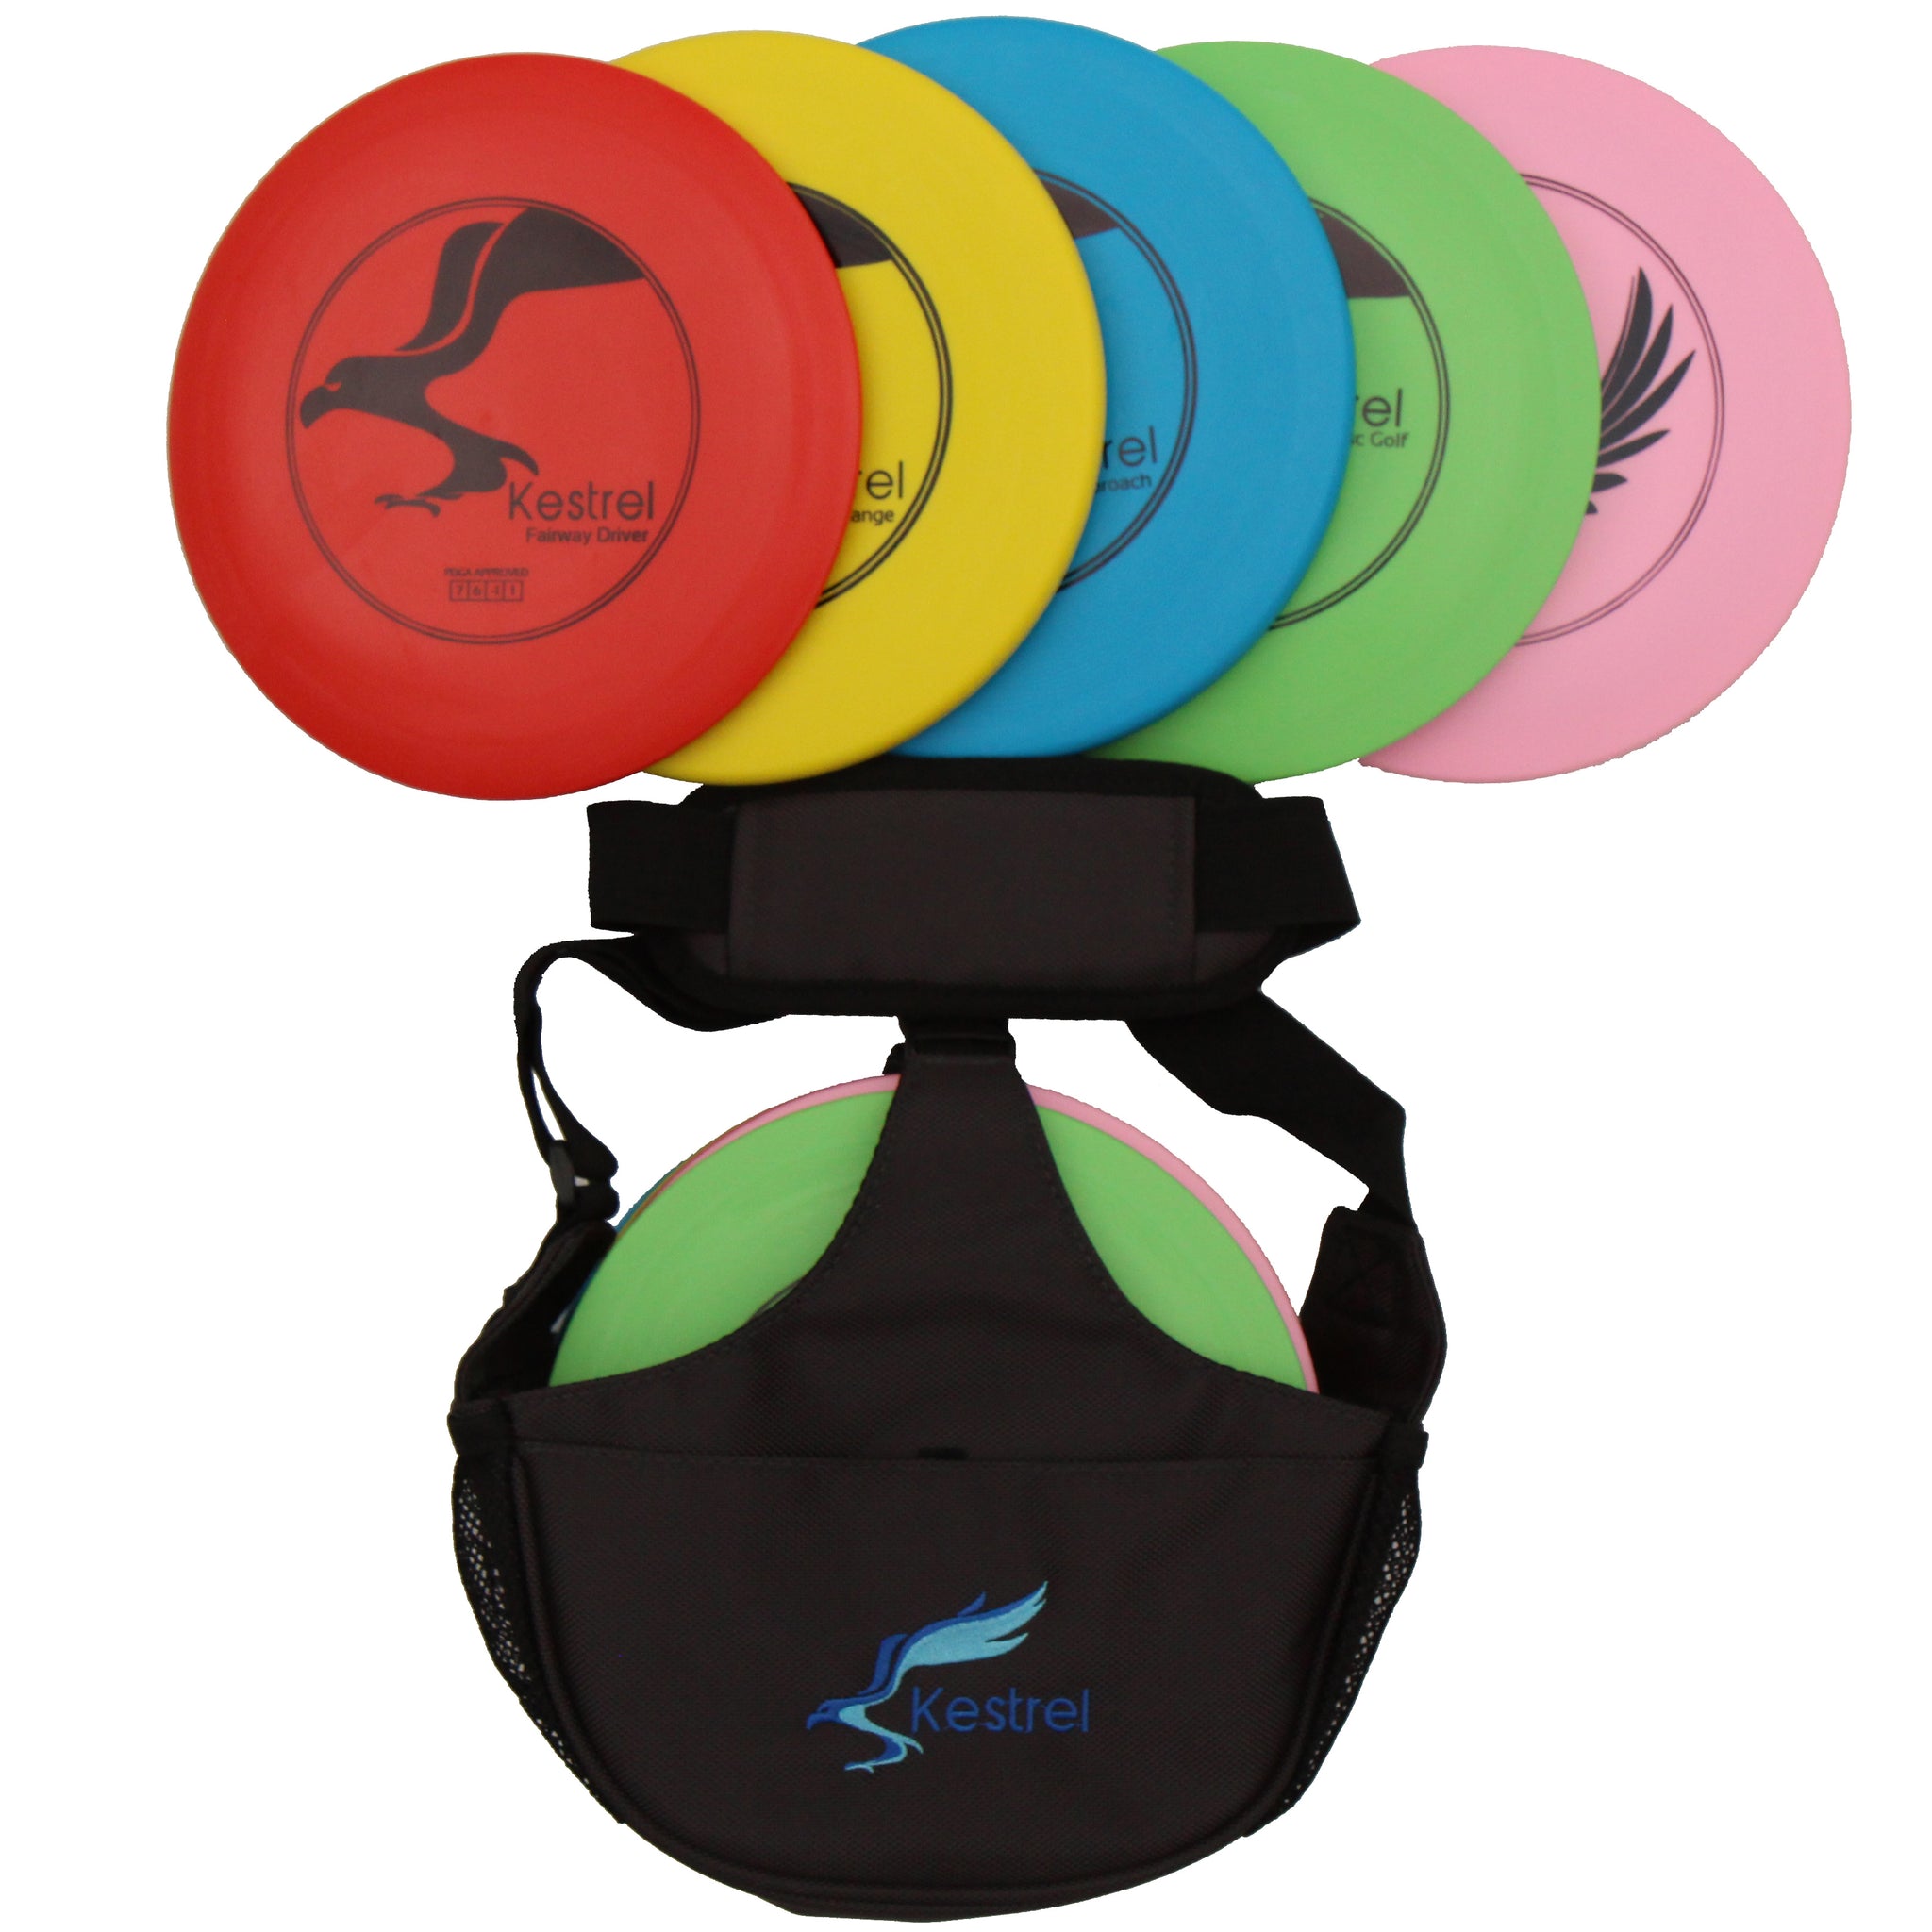 Kestrel Disc Golf Set Bundle, 5 Discs + Shoulder Bag